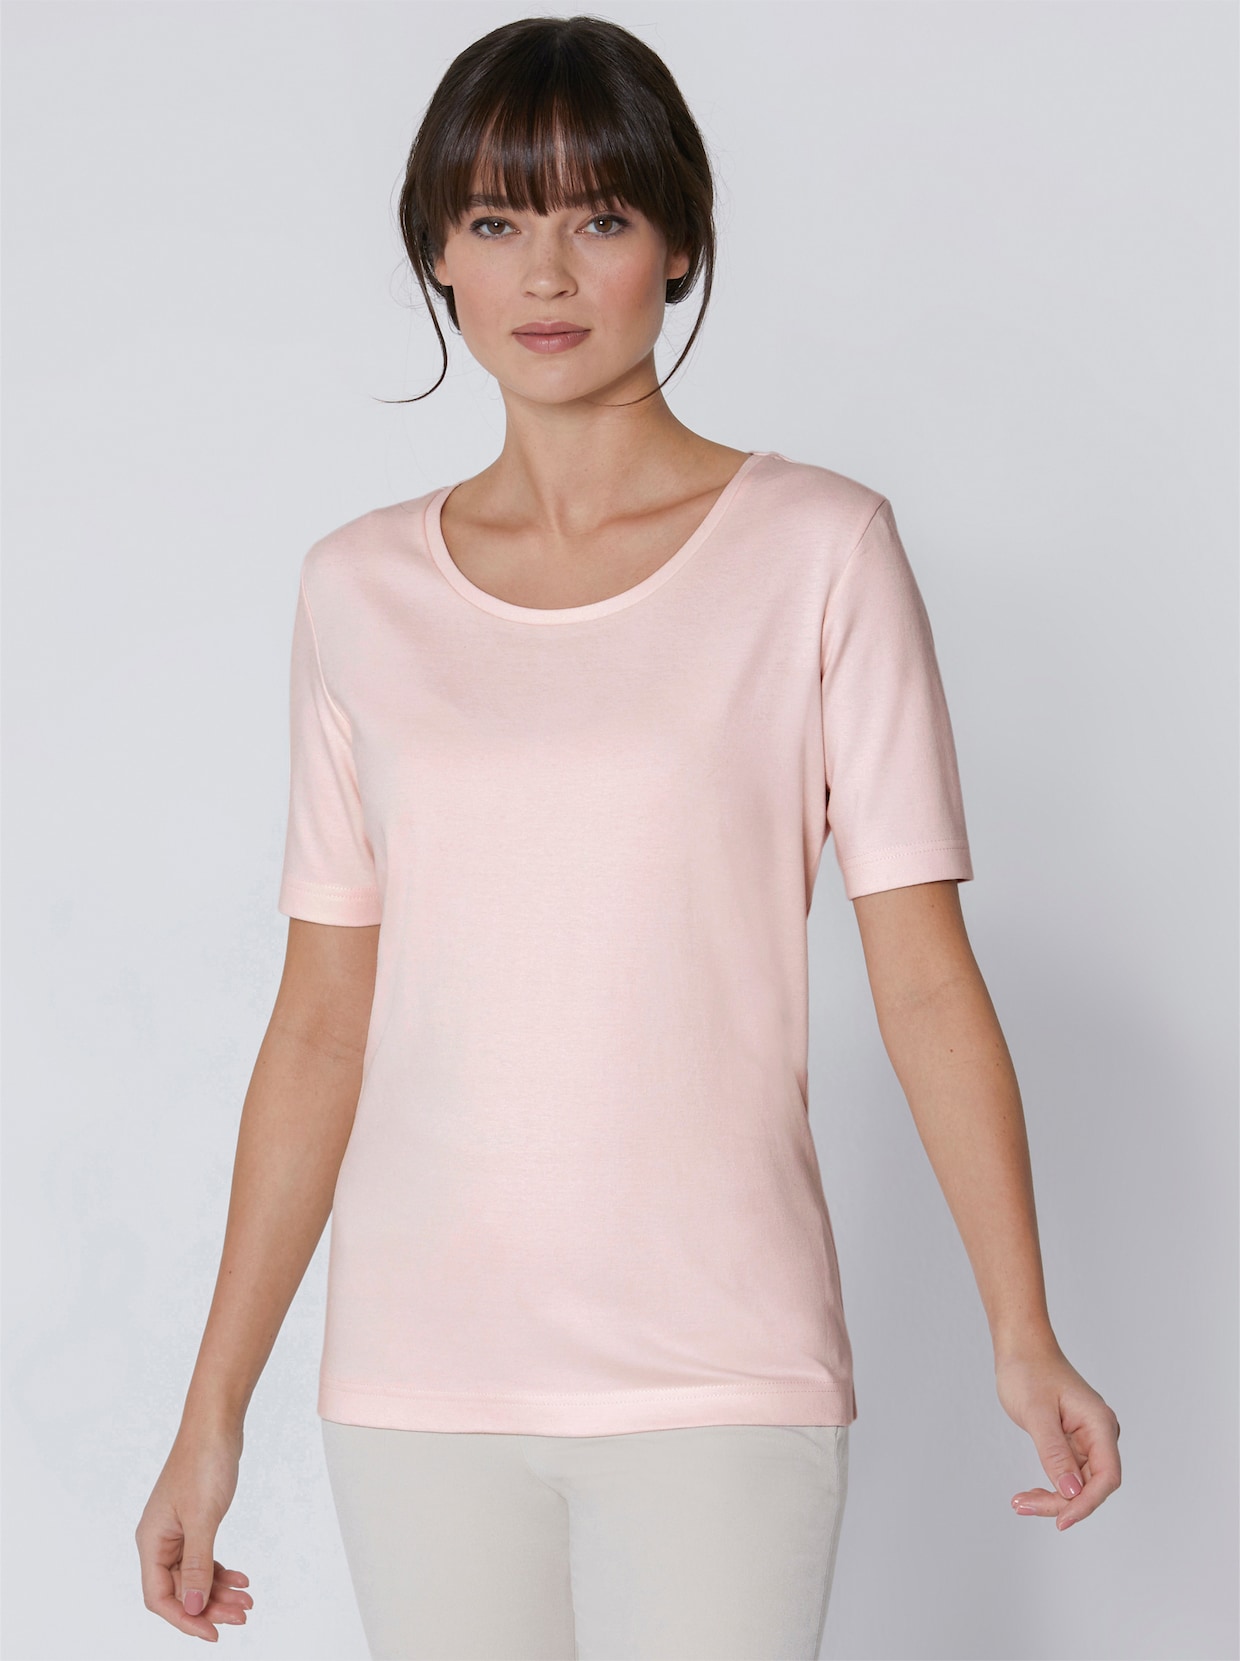 Creation L Premium Baumwoll-Shirt - rosé